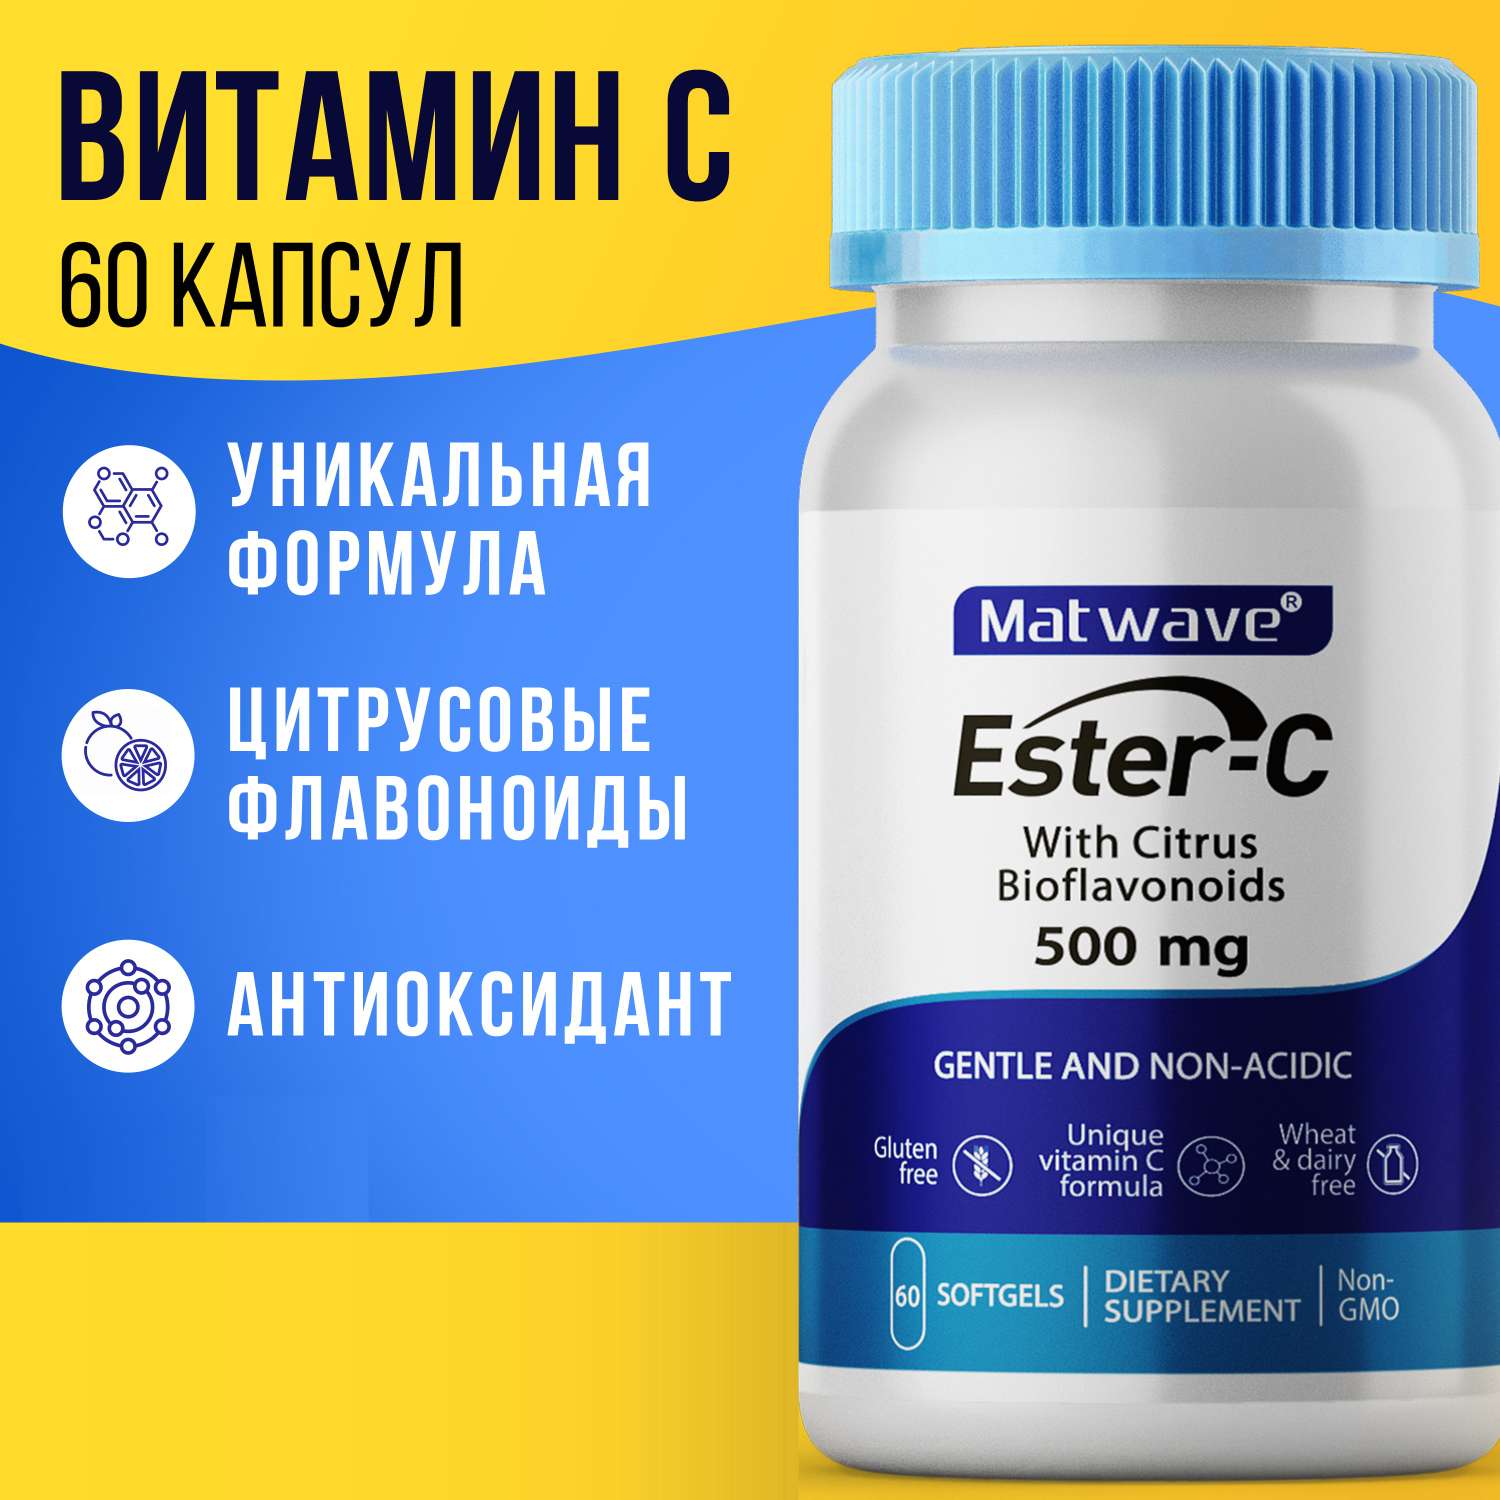 Витамин С Matwave Ester-C Эстер С 500 mg 60 капсул комплект 2 упаковки - фото 2